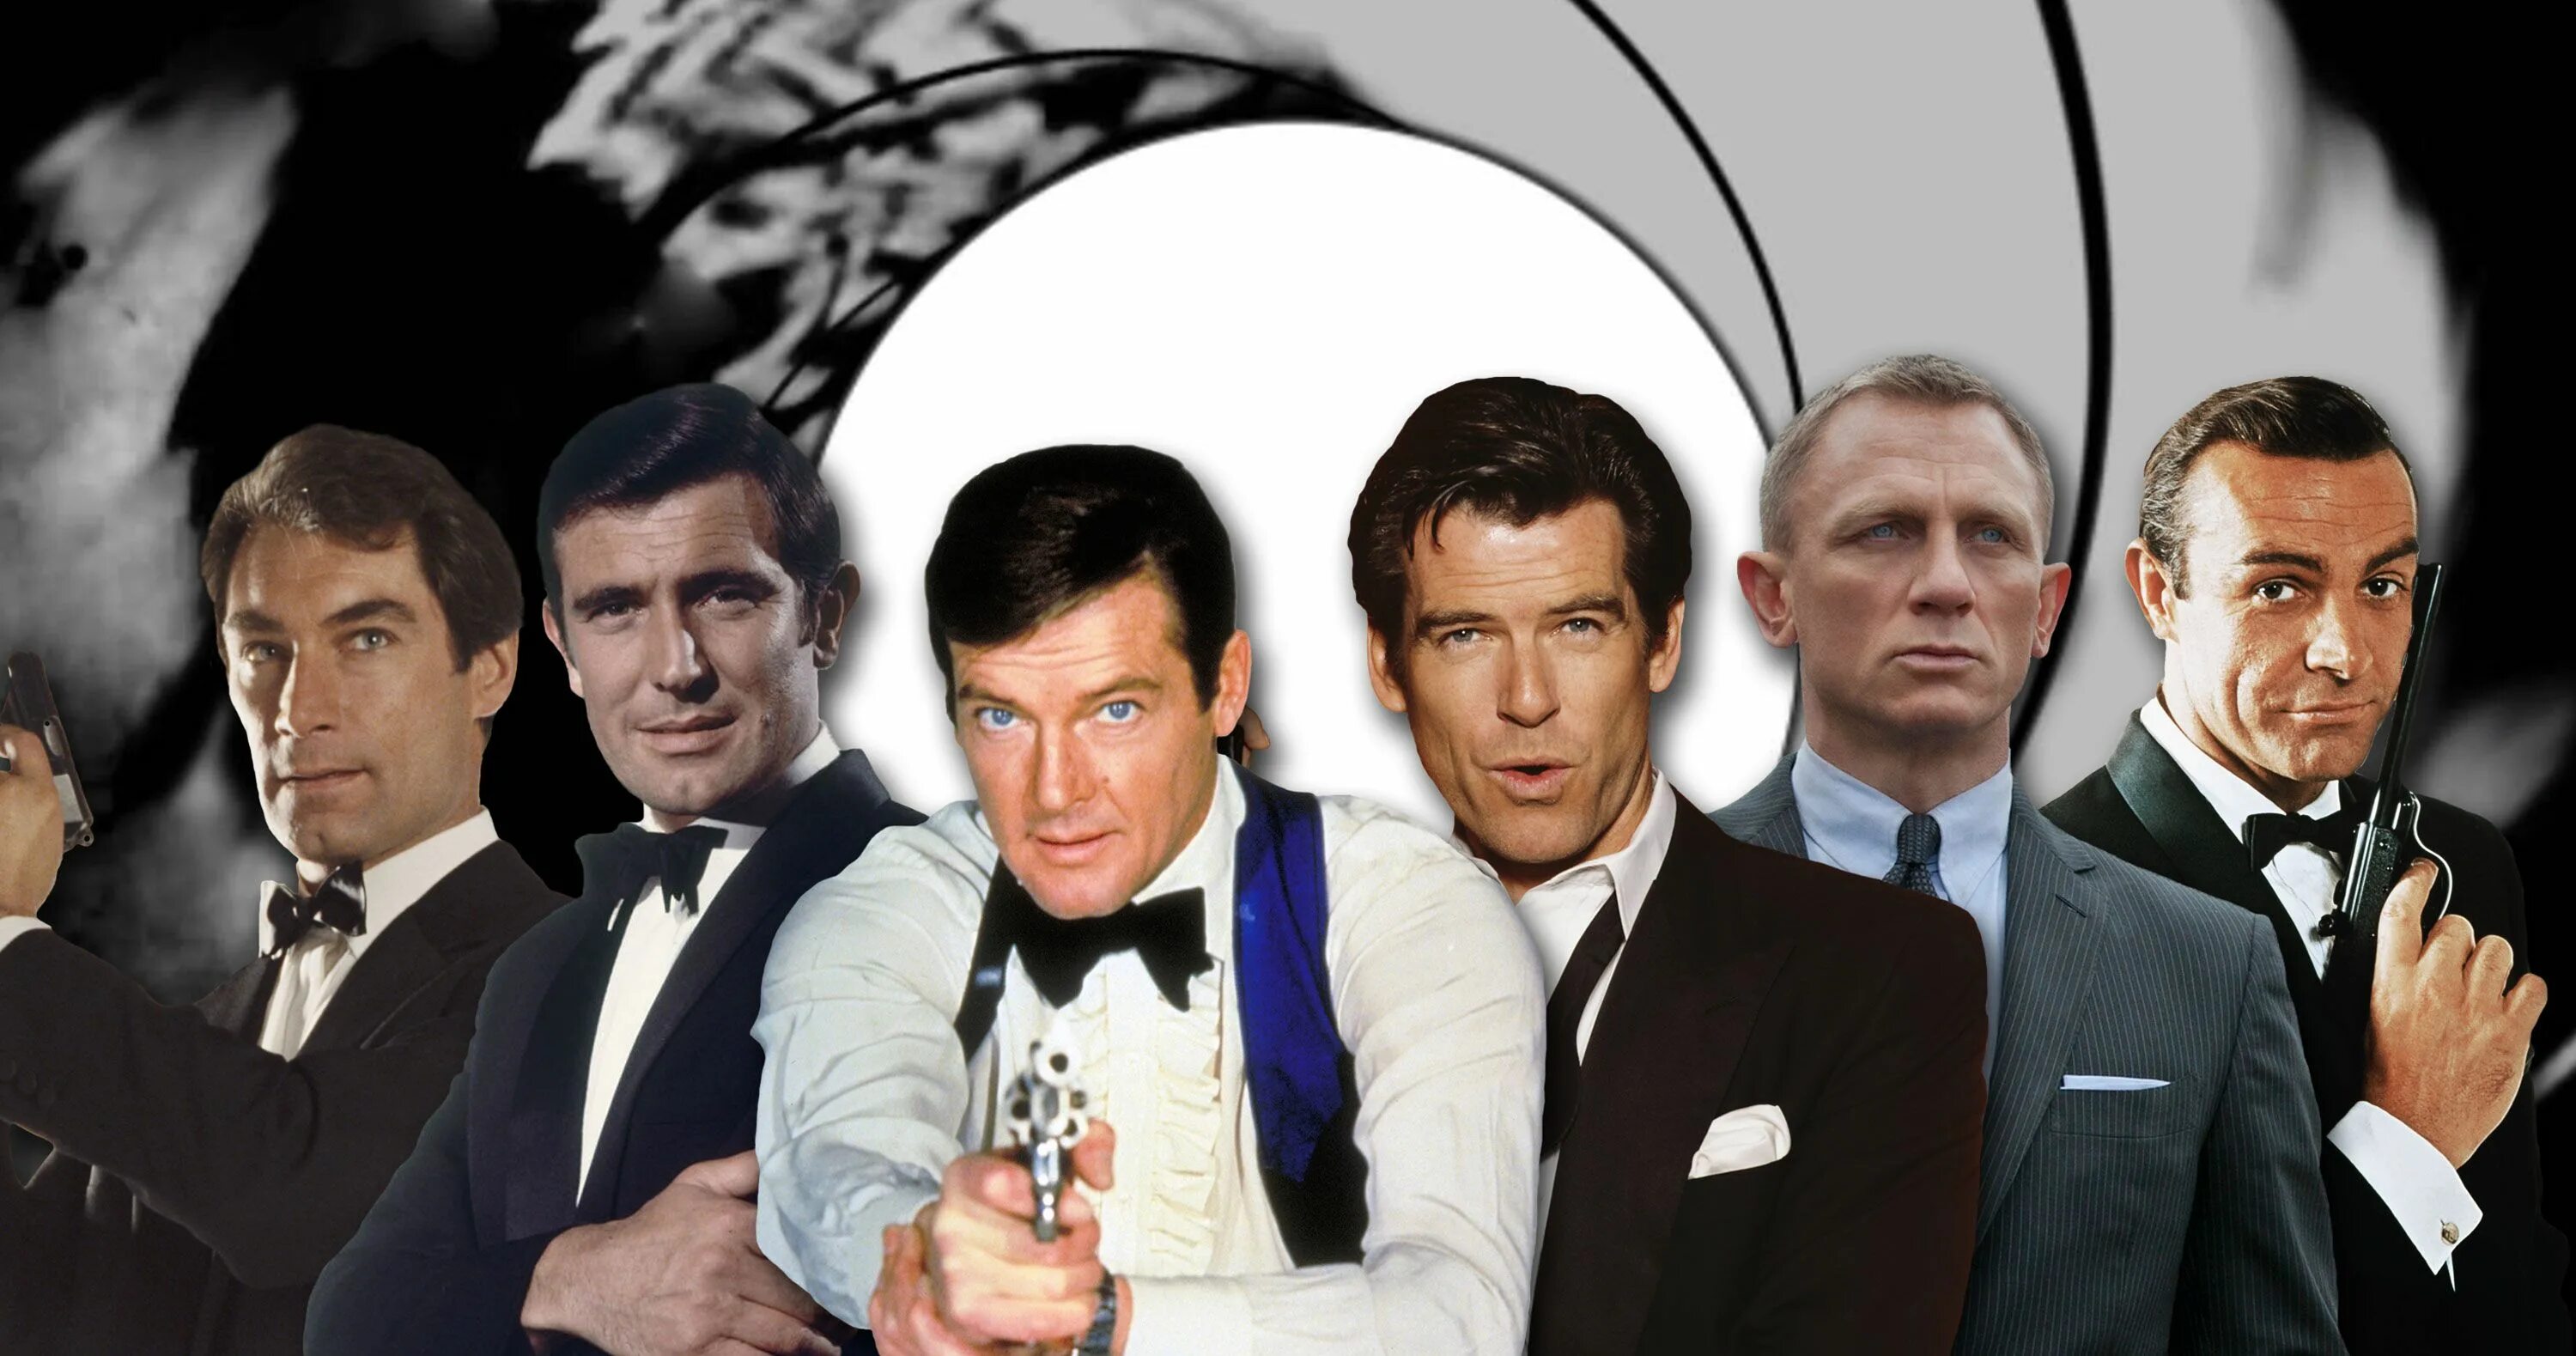 Шон Коннери агент 007. Кинотик бонд